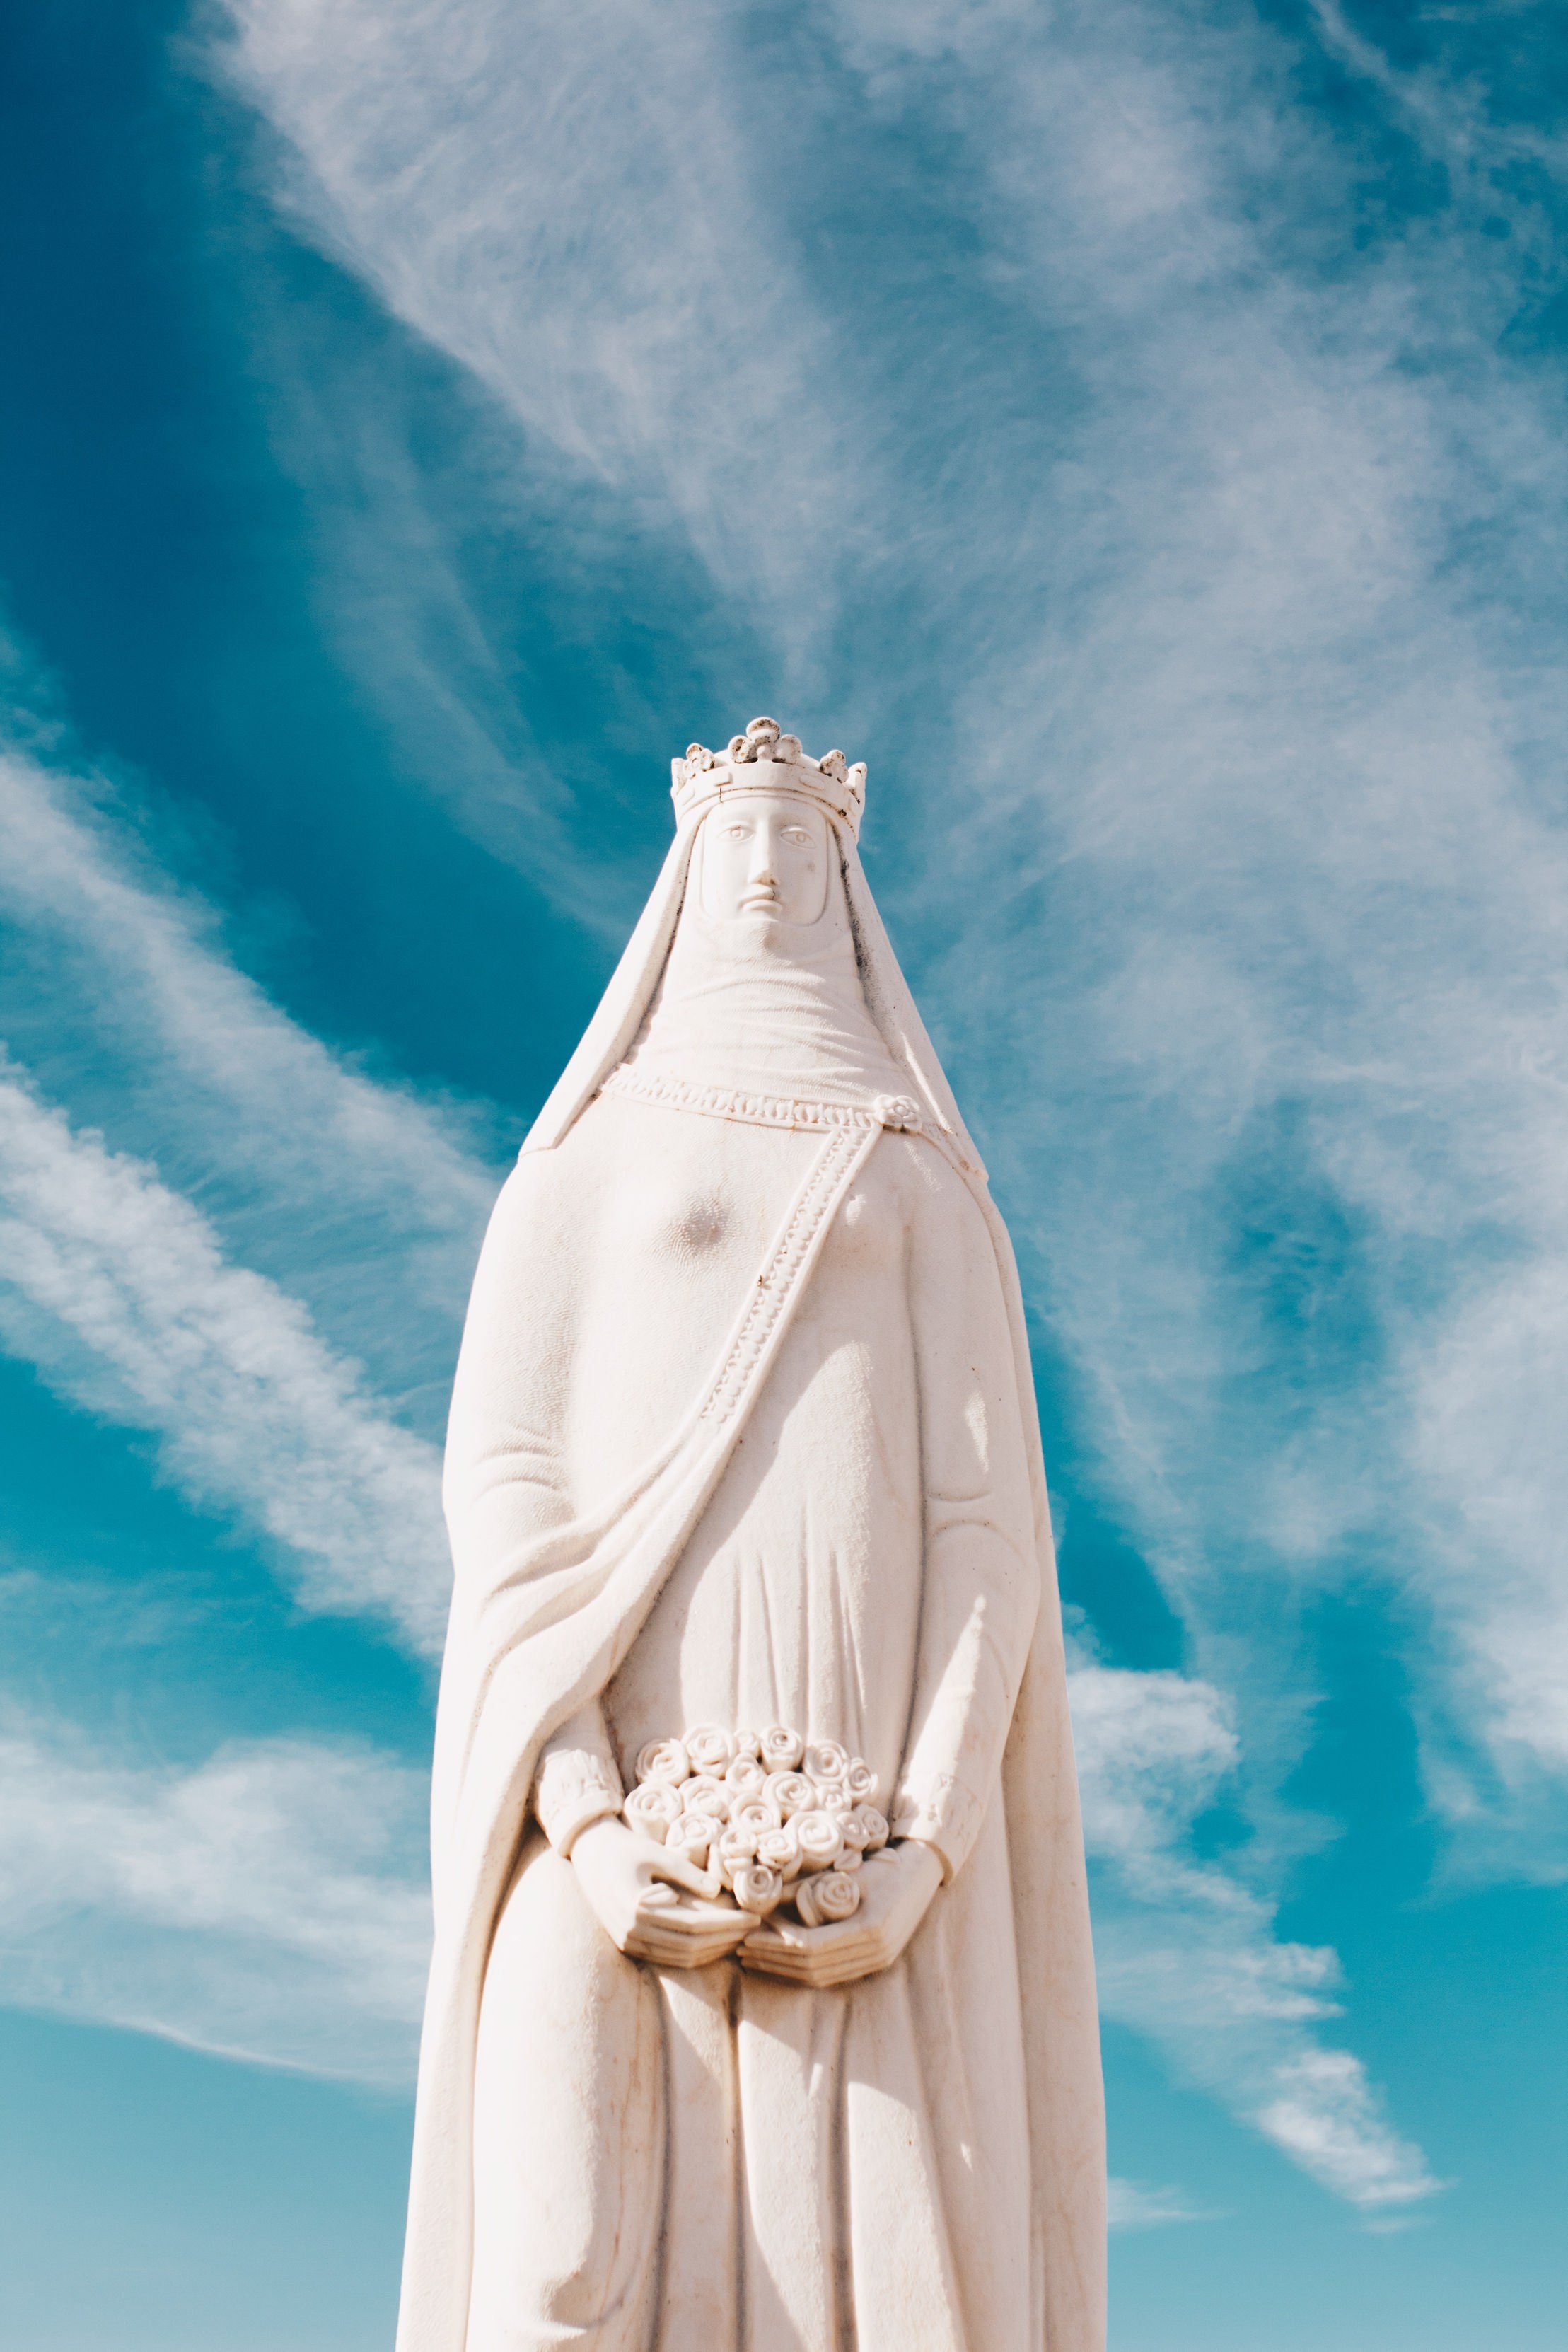 Eine schneeweiße Marienstatue mit Krone steht ernst vor einem blauen Himmel mit interessanten Schleierwolken.